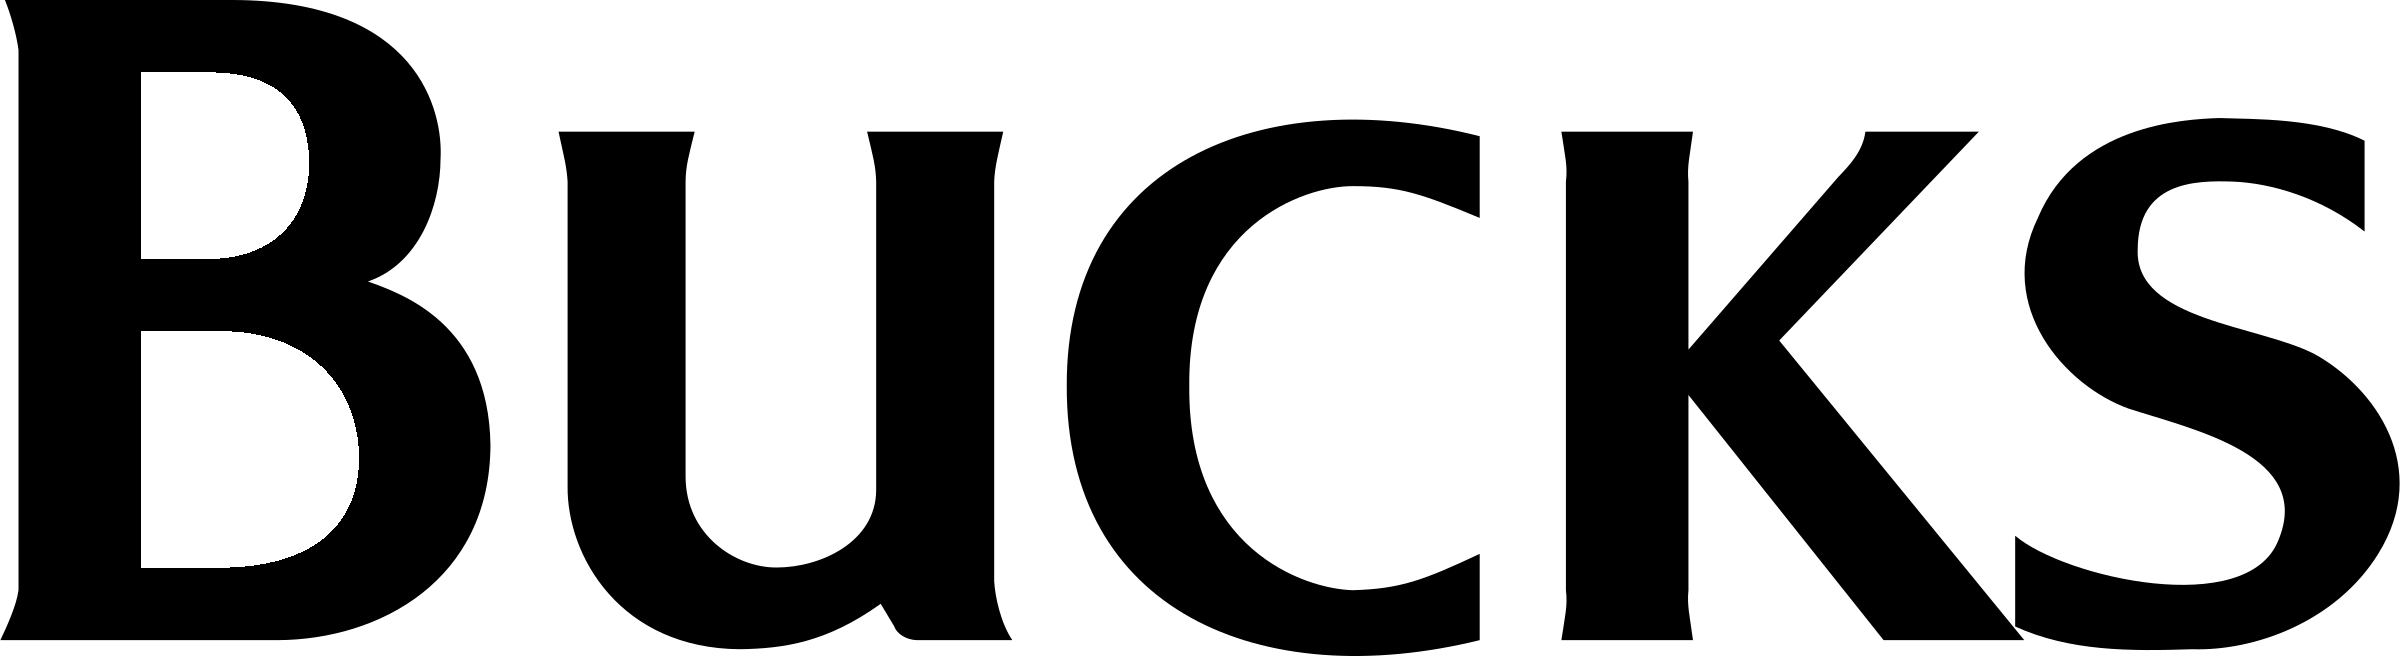 Bucks Logo PNG Transparent